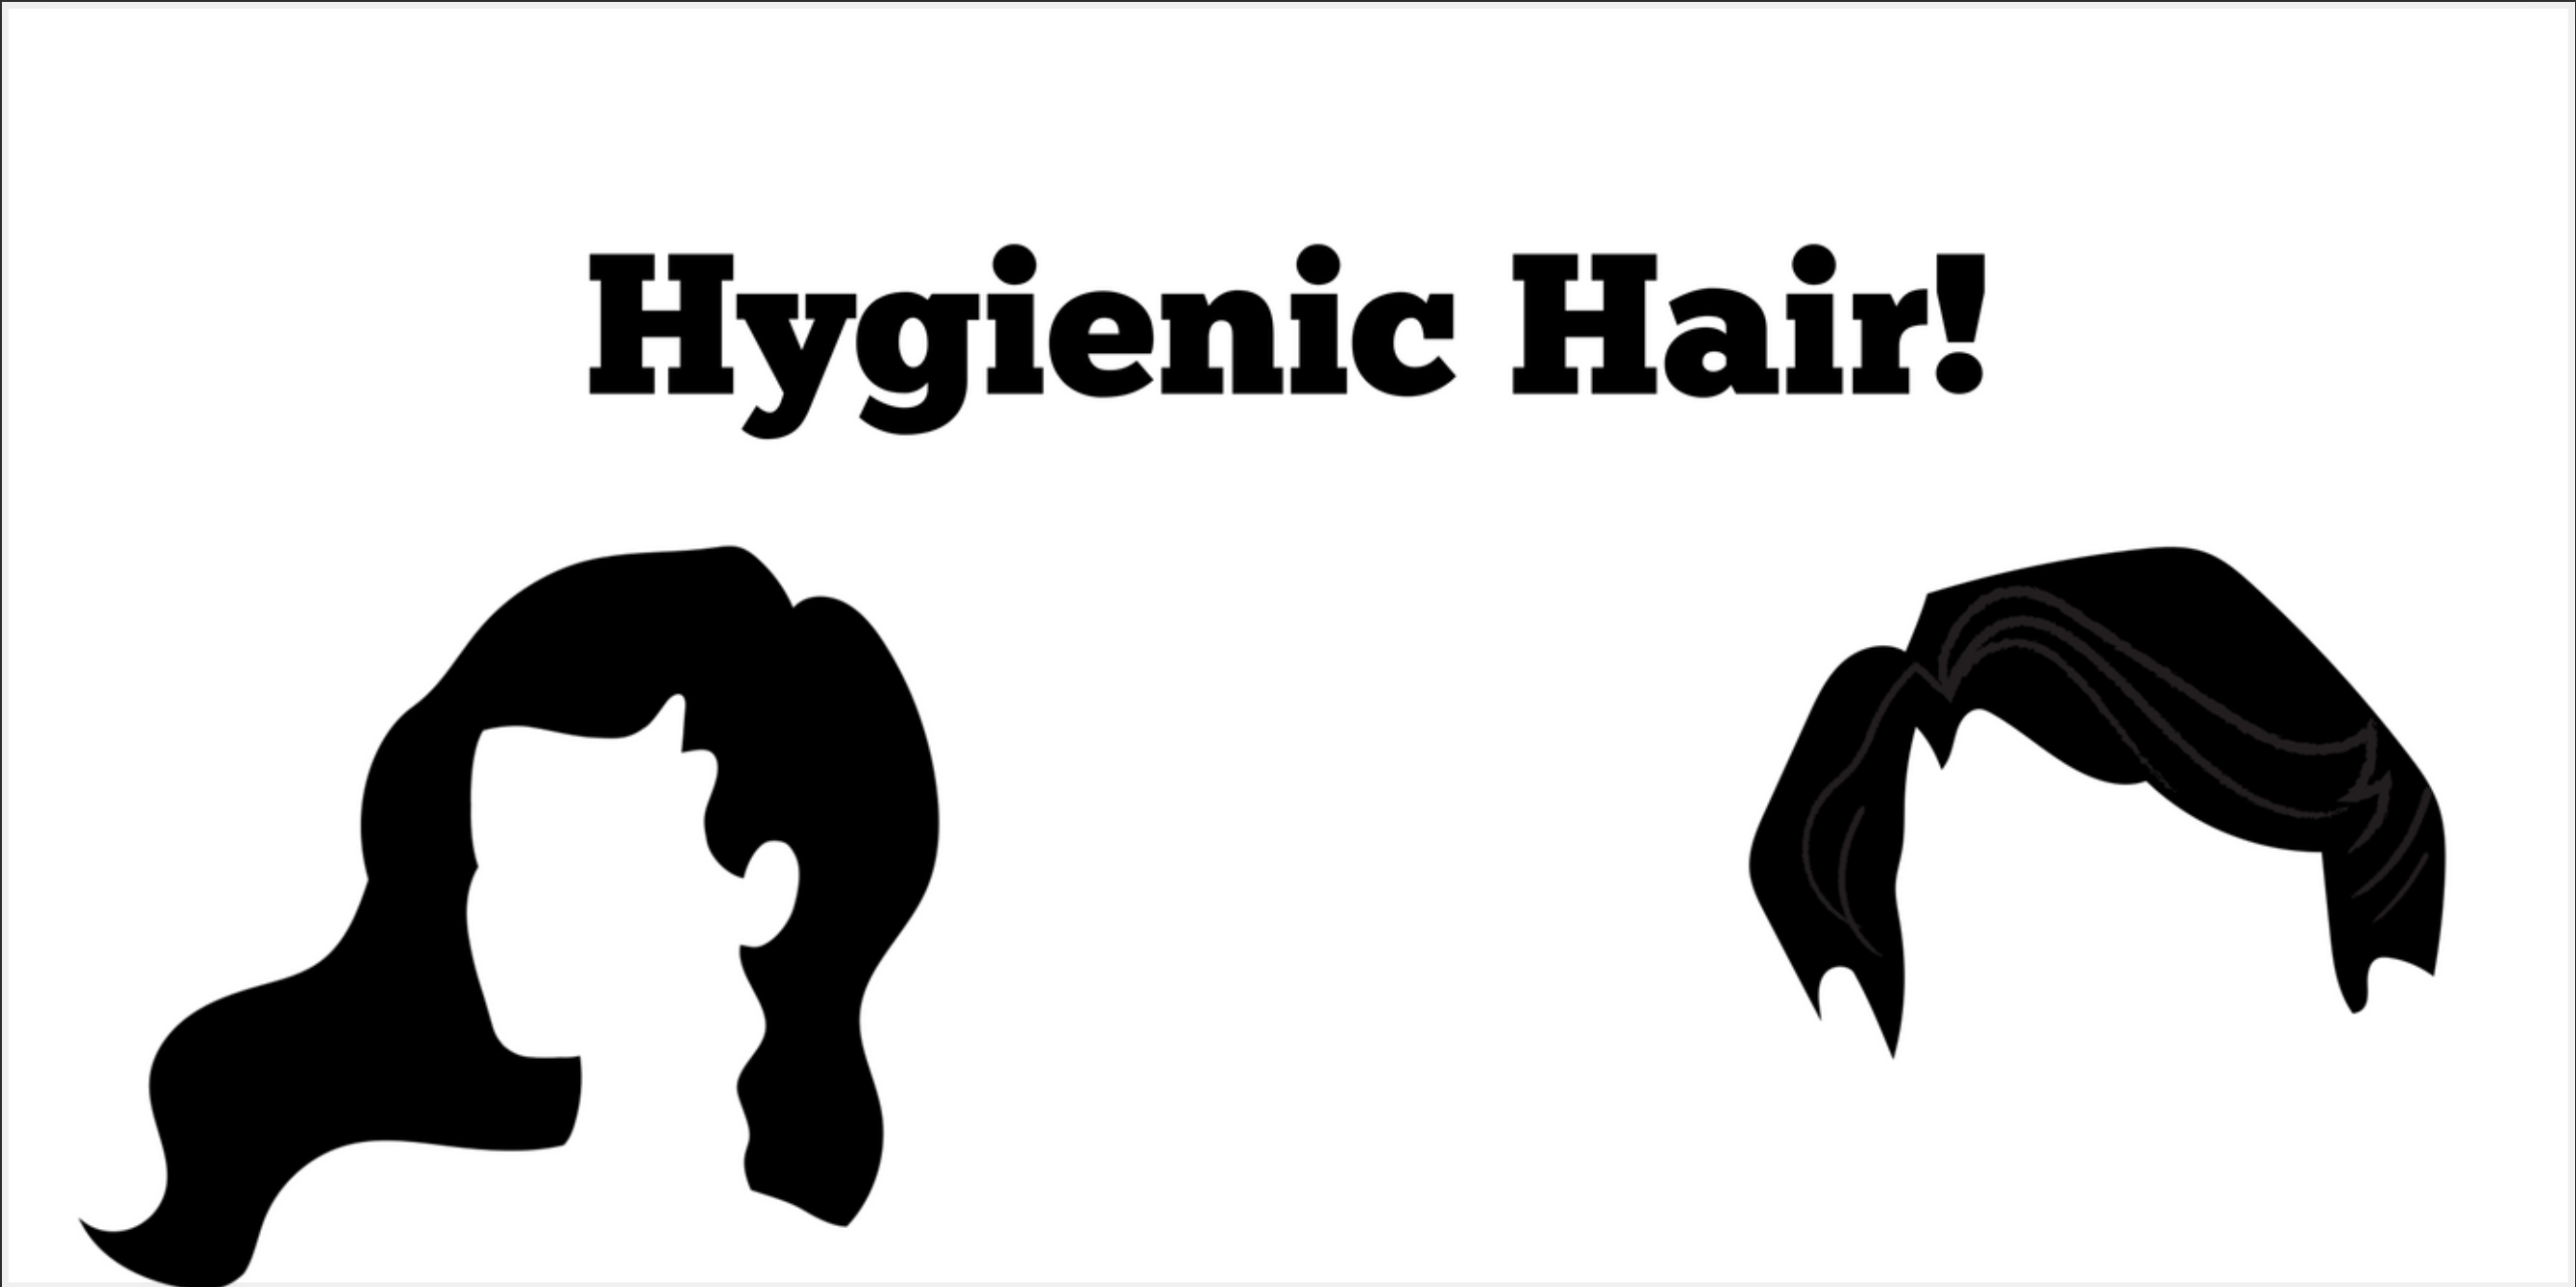 Hygienic hair!